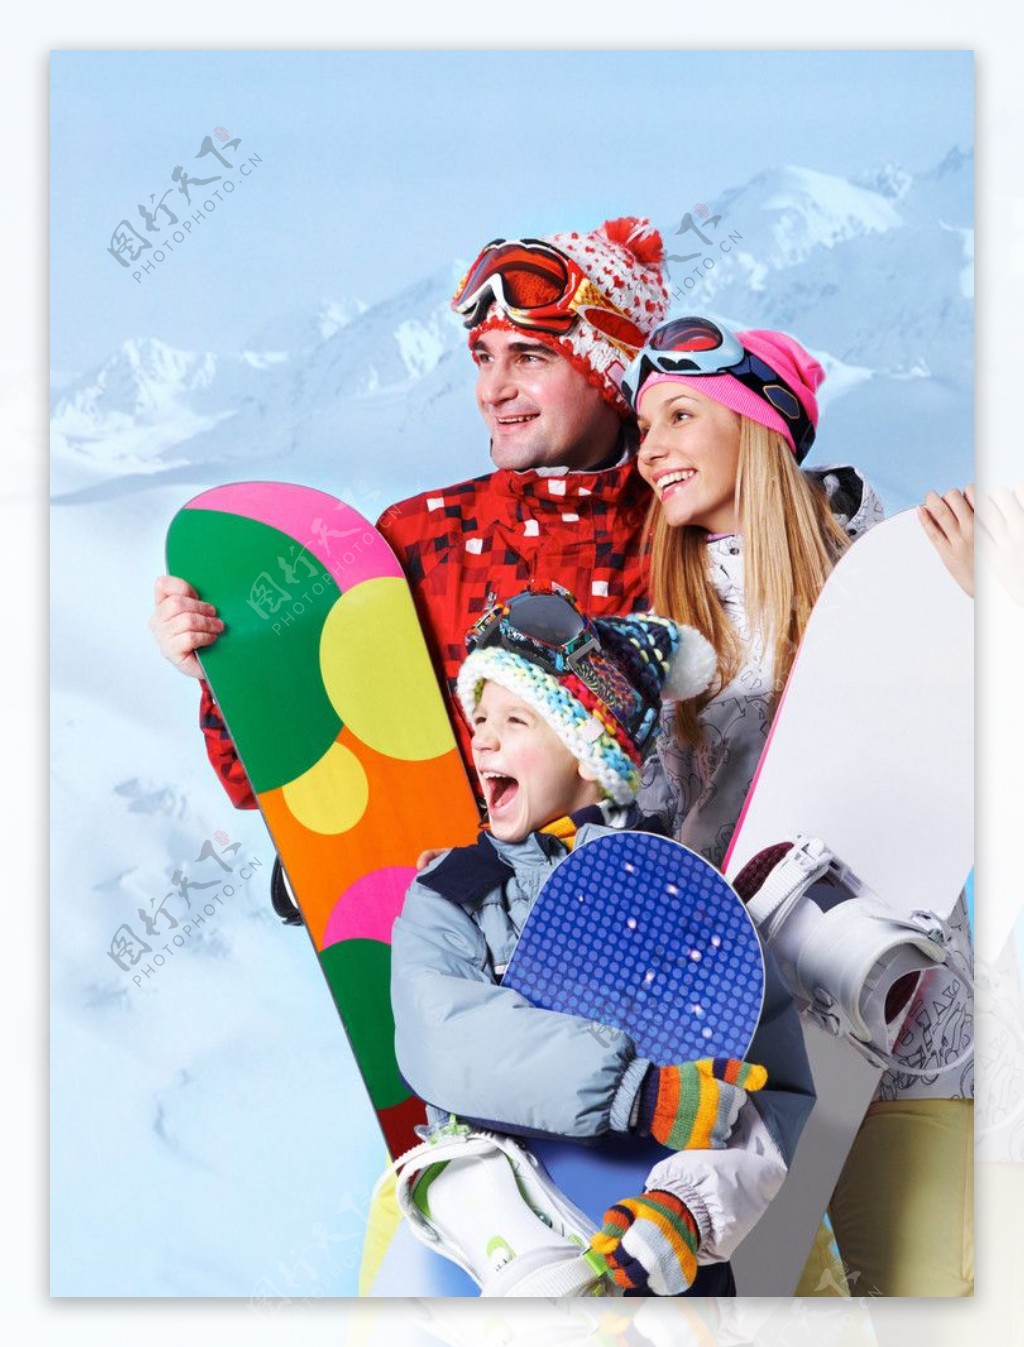 滑雪场快乐幸福一家人图片